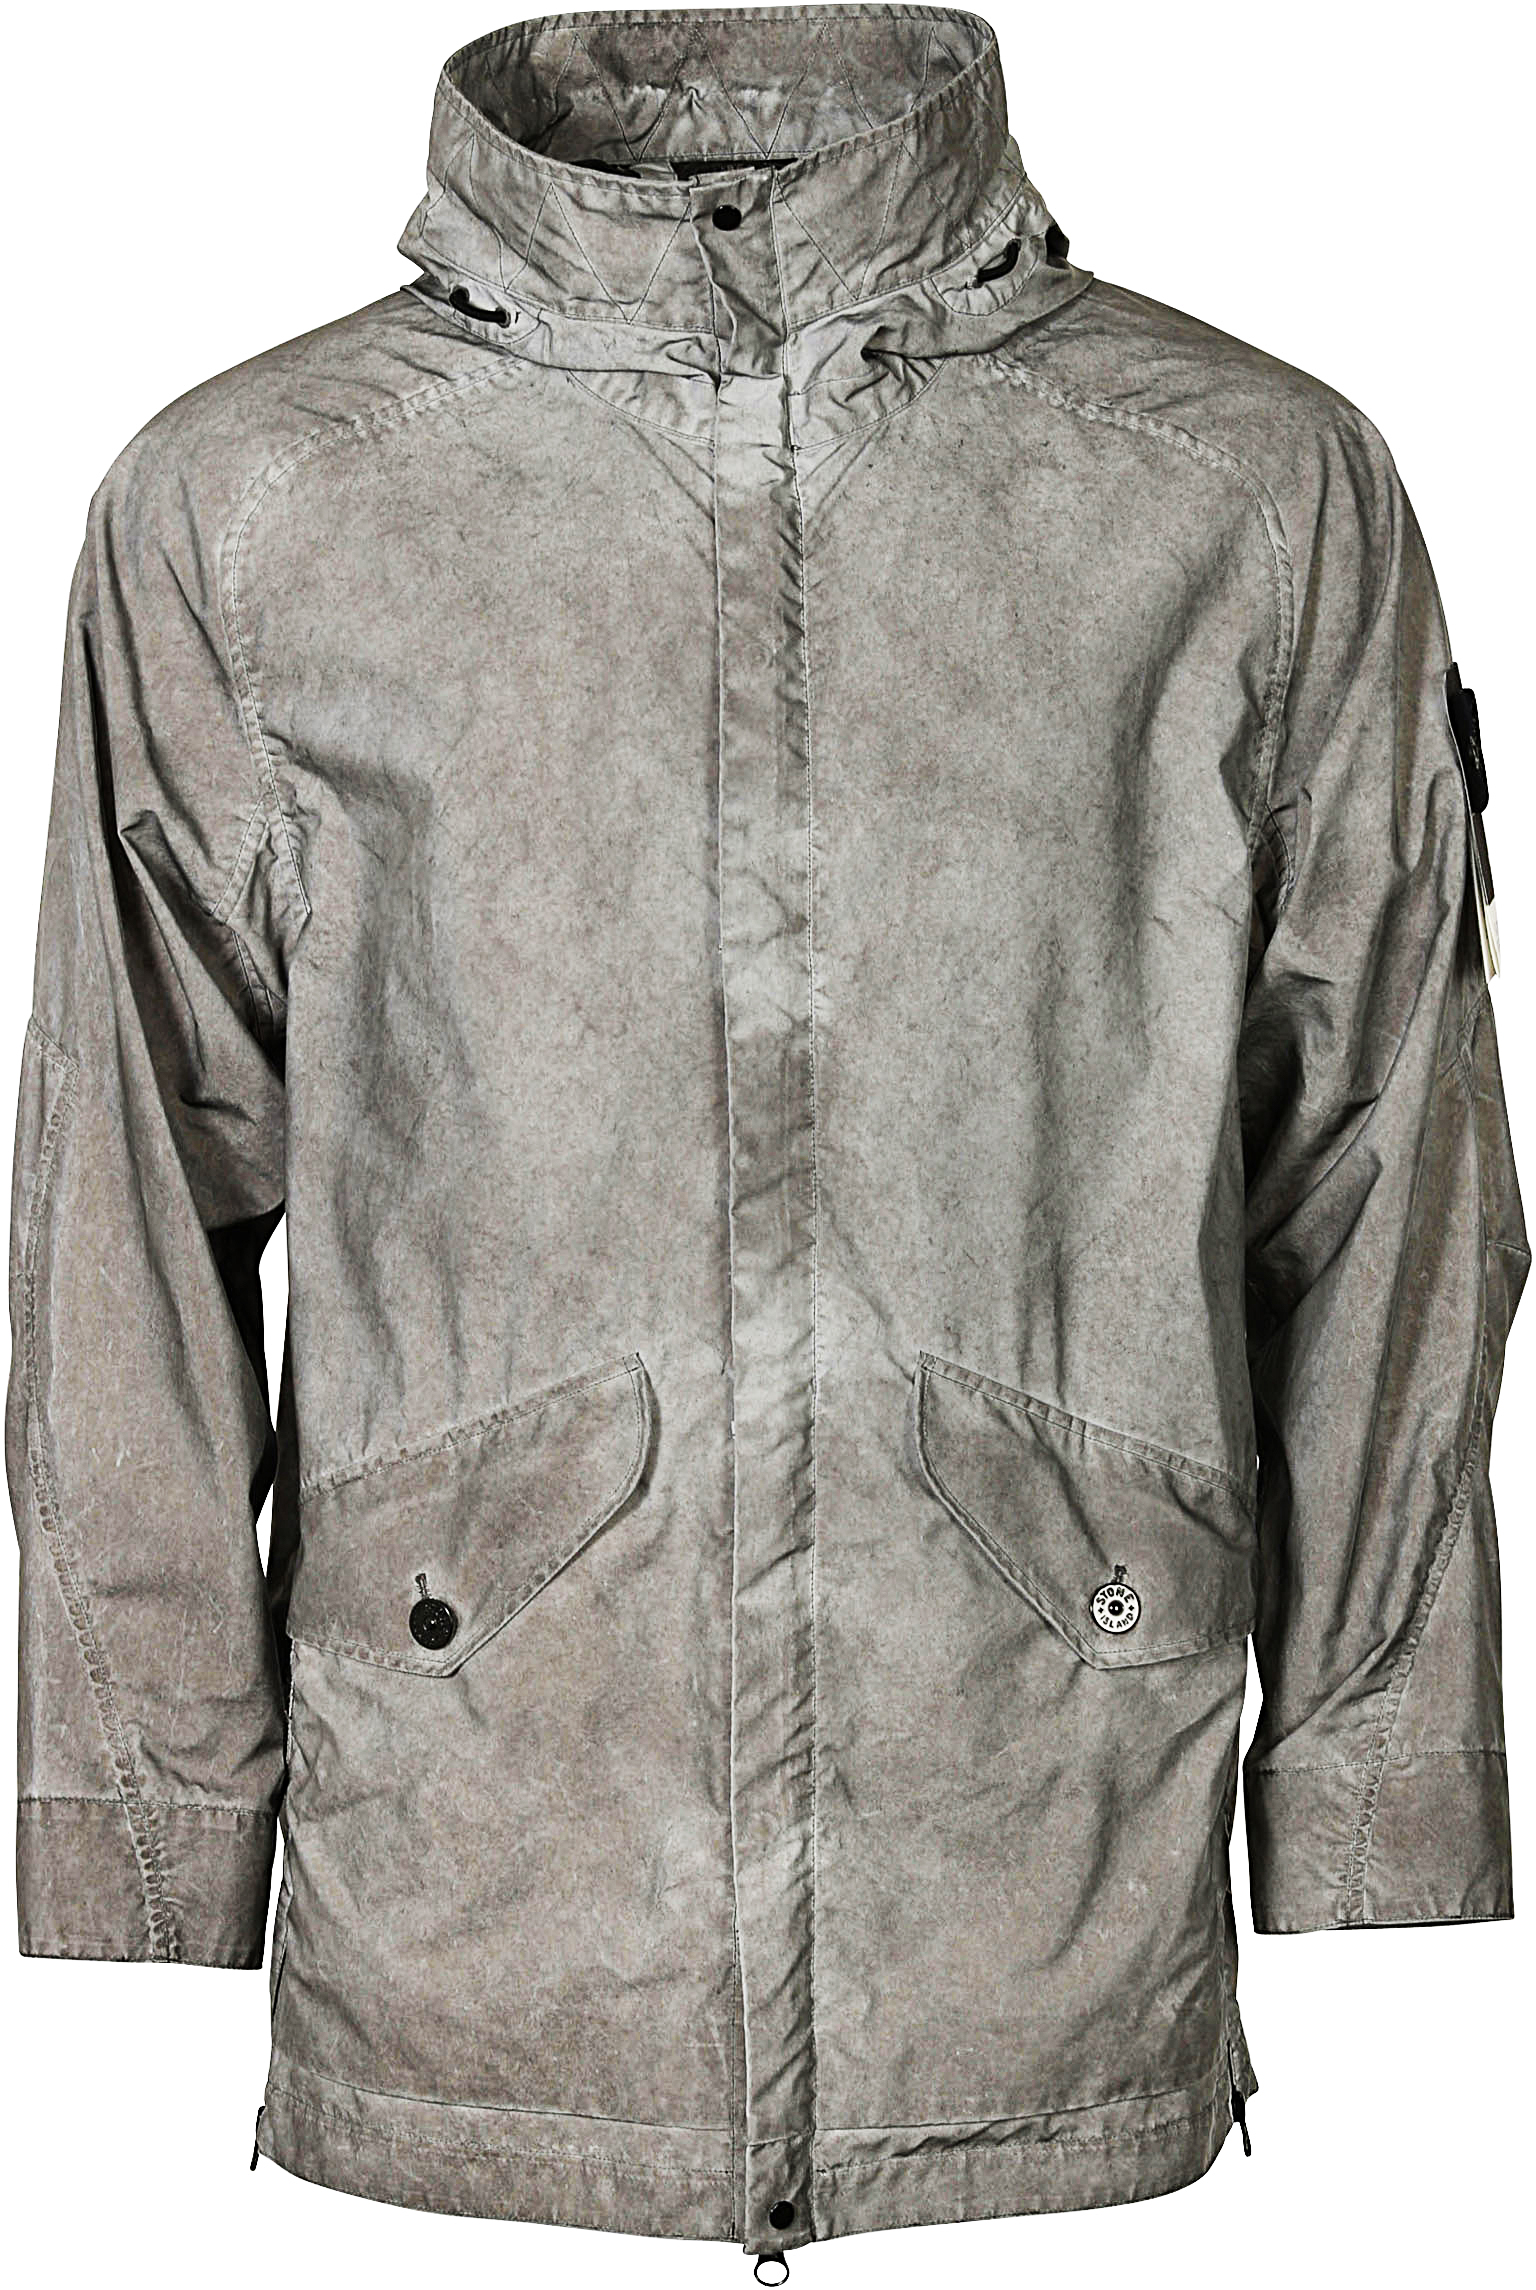 Stone Island Jacket Reflective Grey XXL